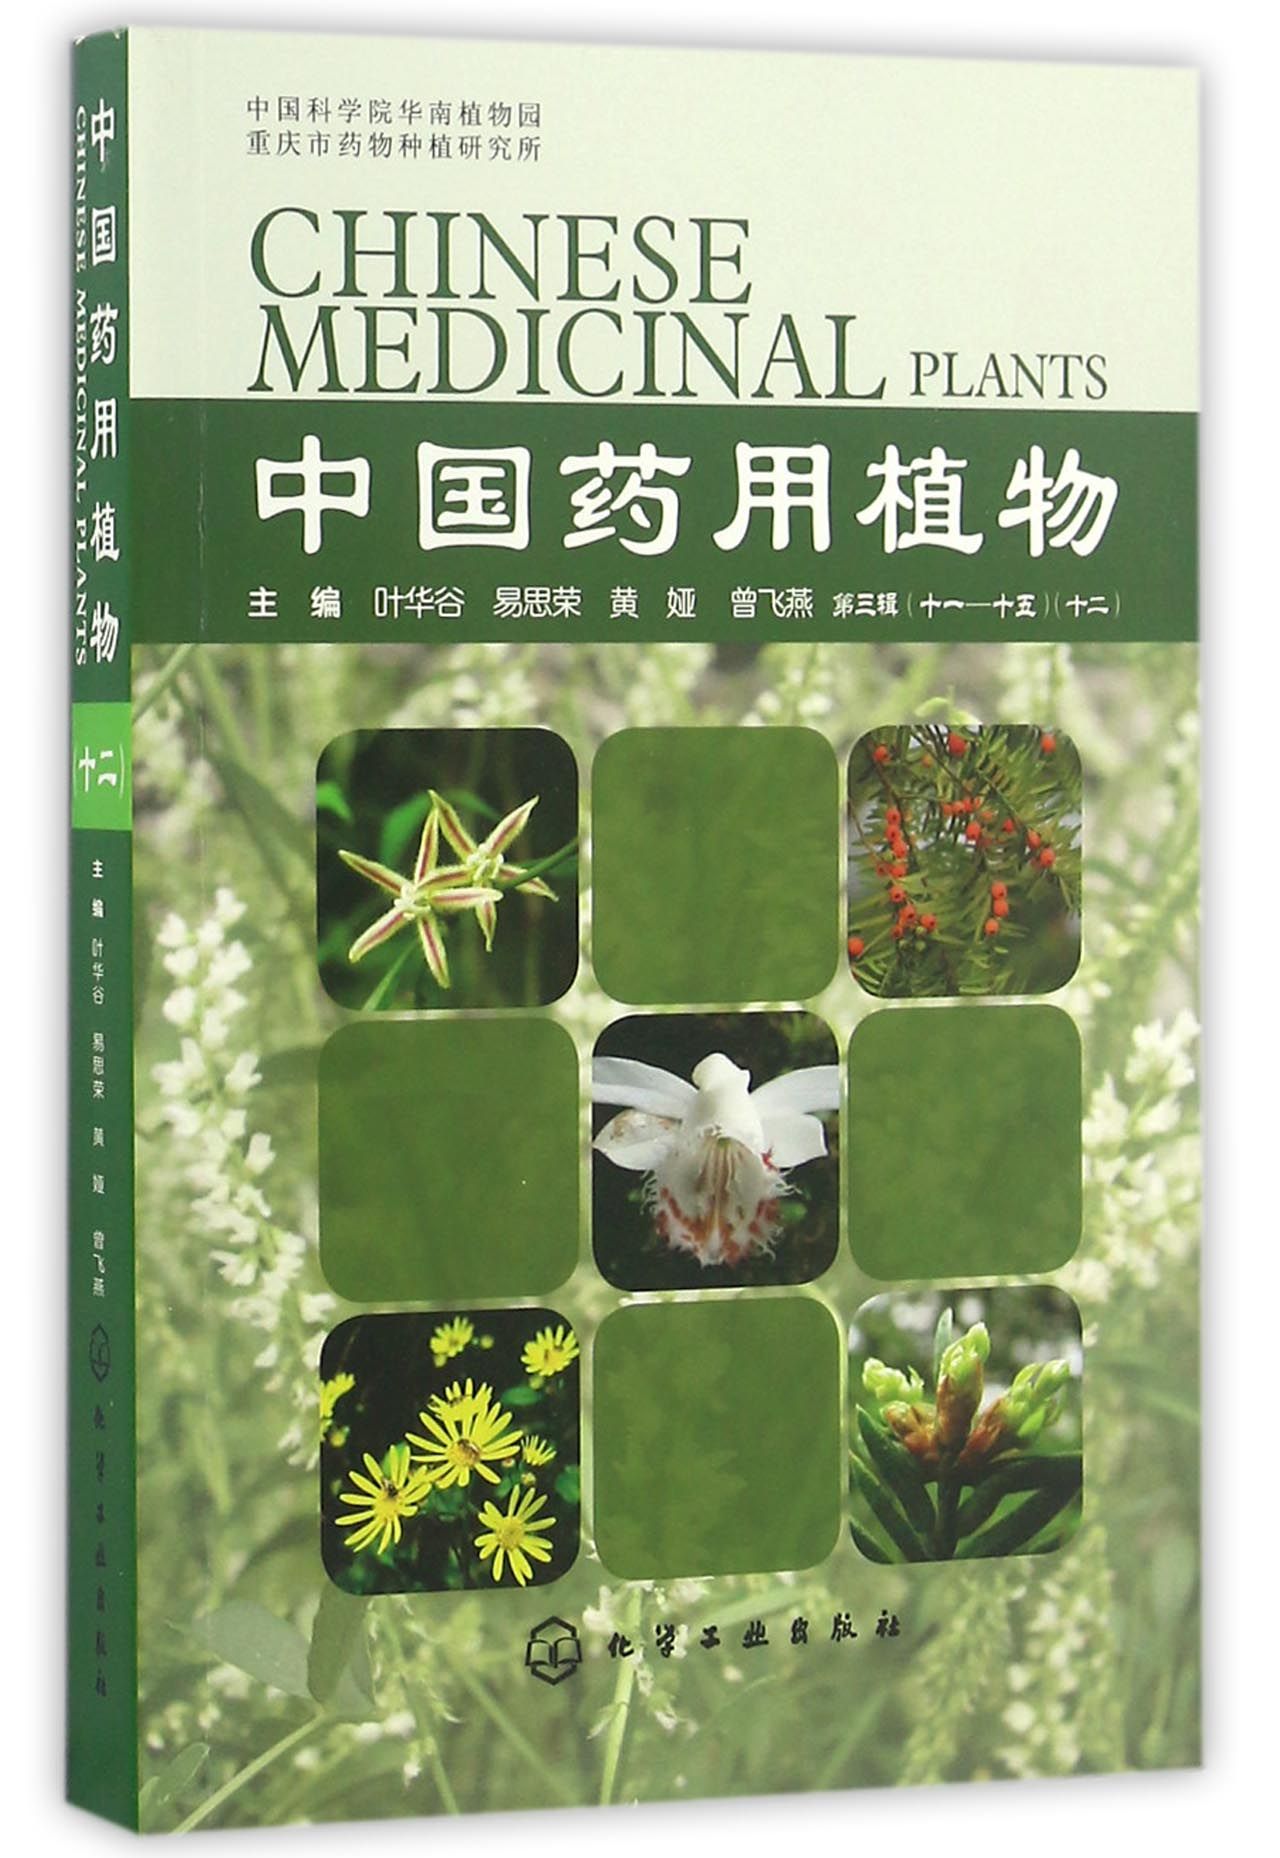 正版图书中国药用植物(12)叶华谷 等化学工业出版社9787122274151